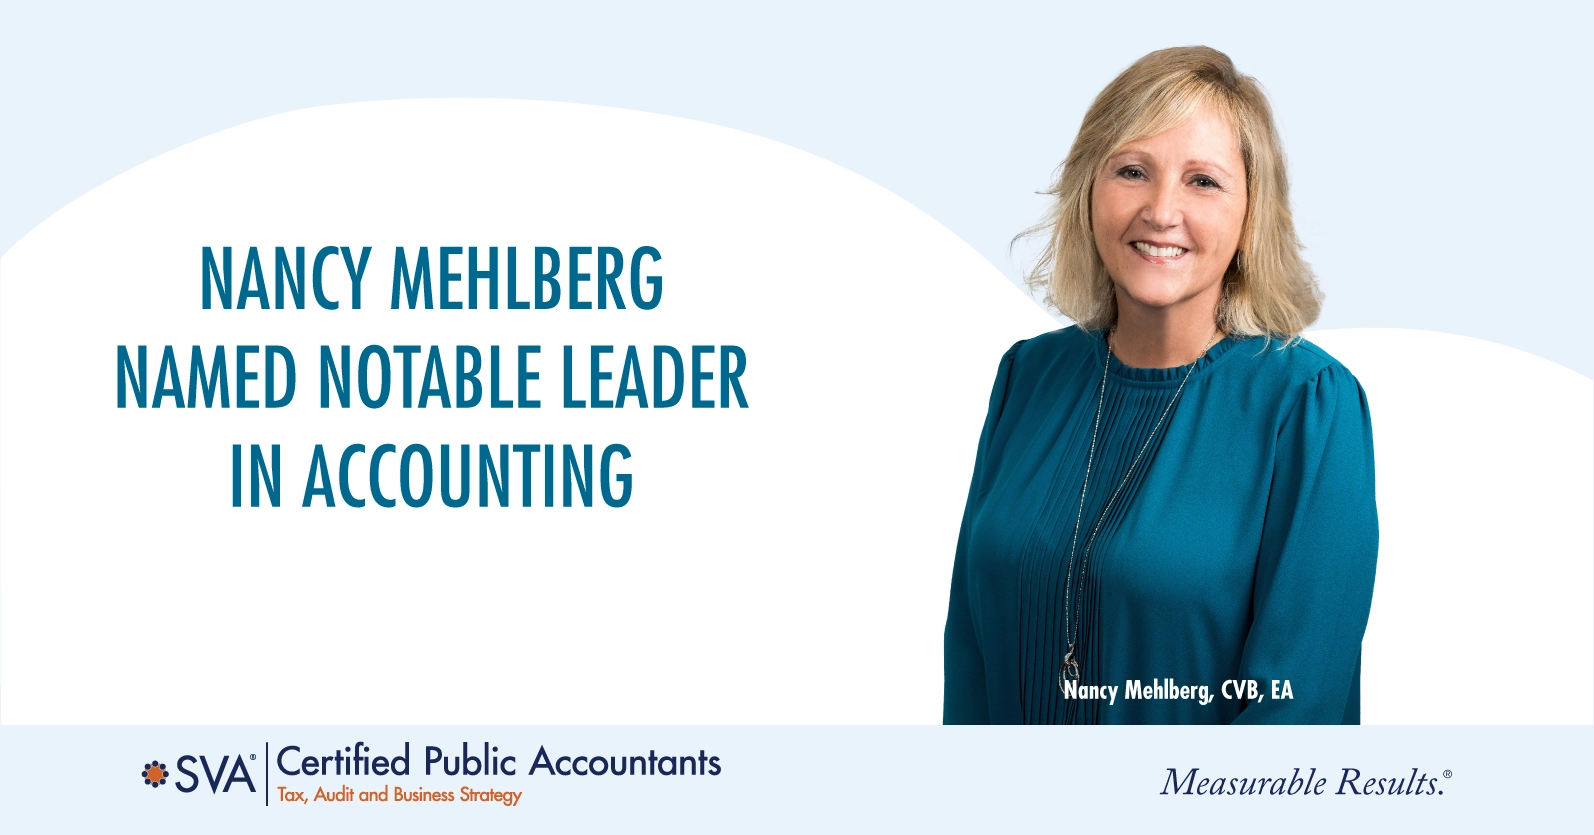 Nancy Mehlberg Named Notable Leader in Accounting